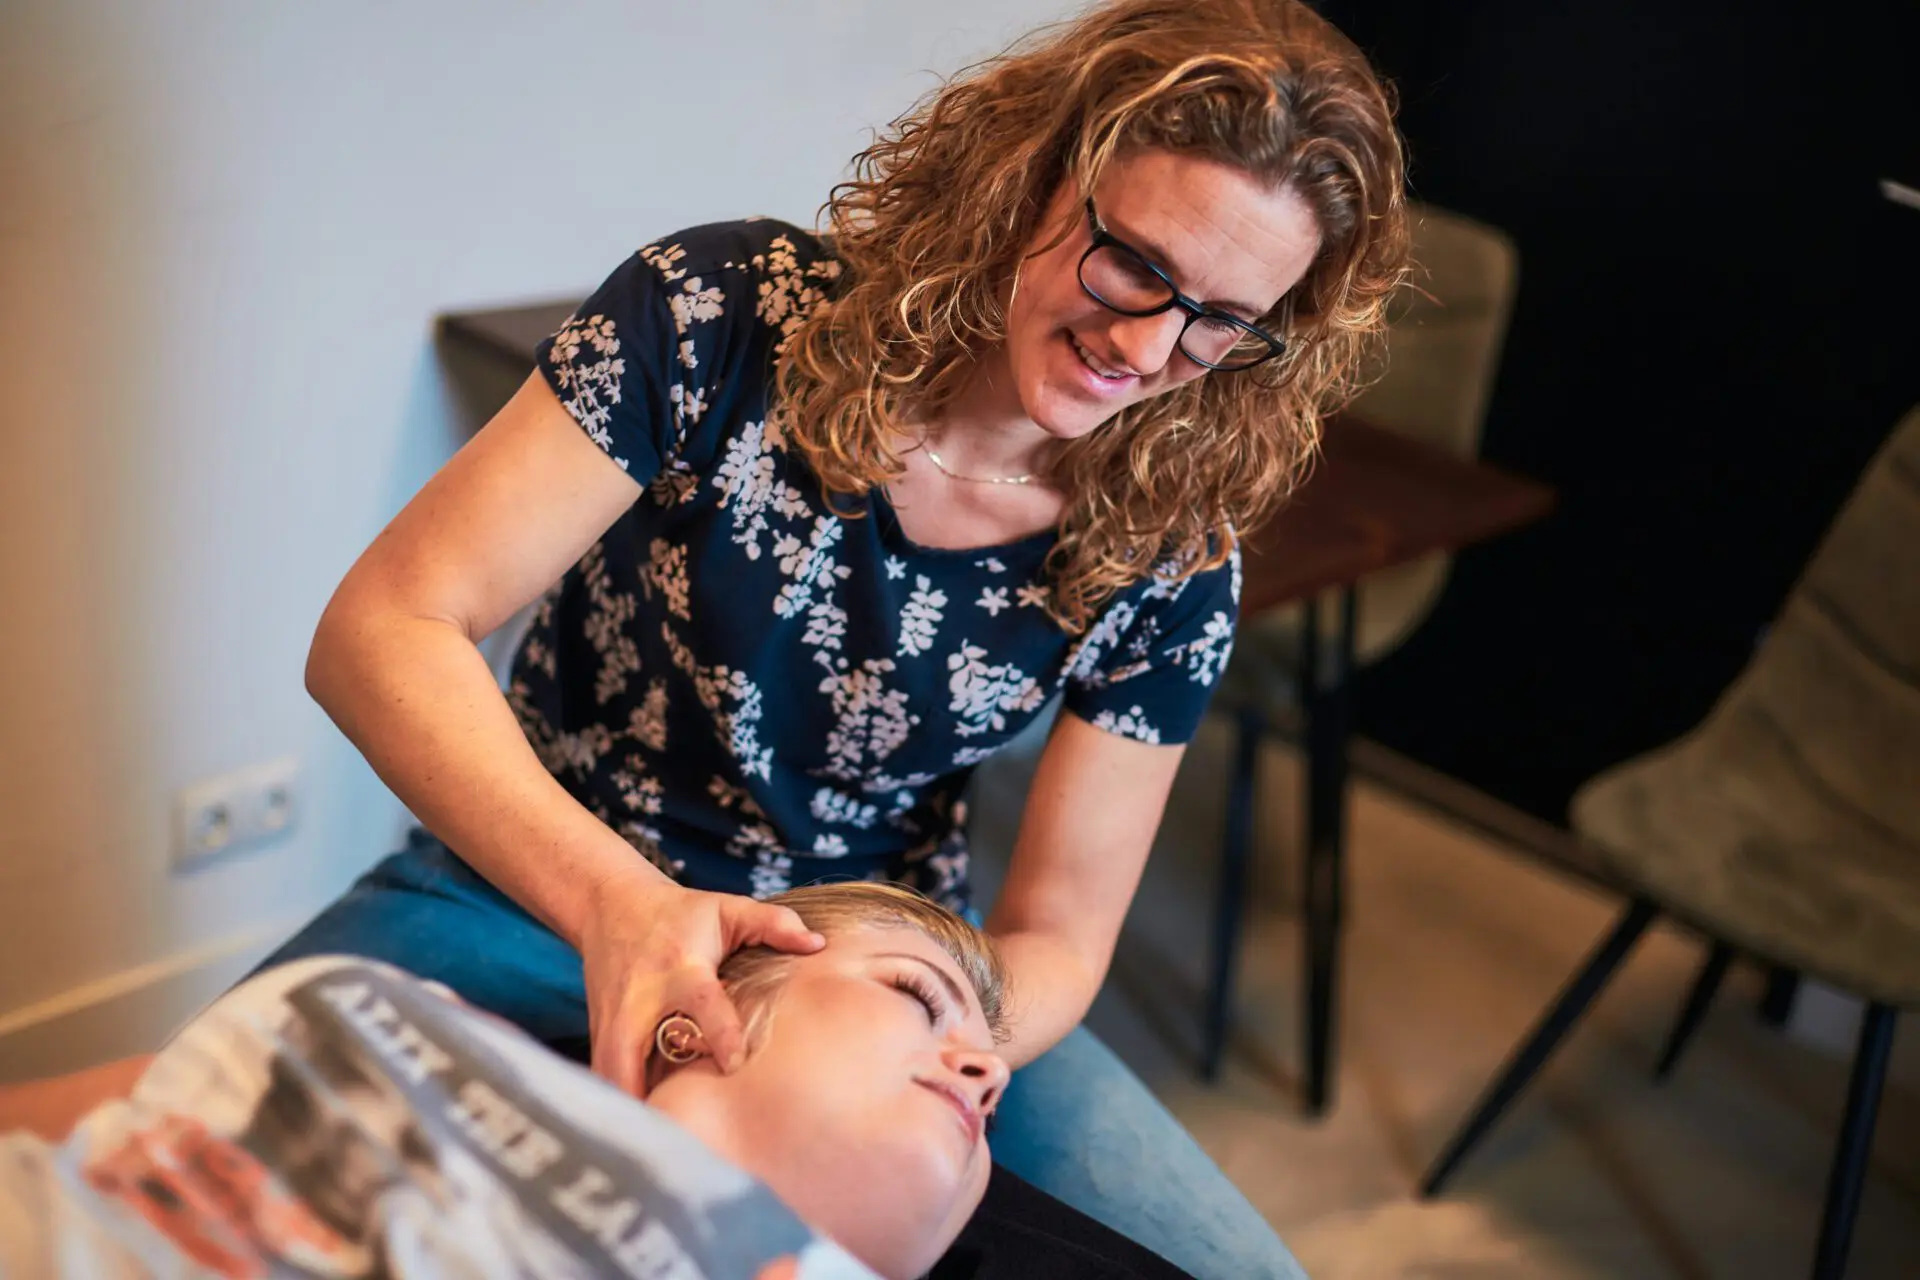 Fysiotherapeut behandelt nekklachten bij patiënt tijdens fysiotherapie behandeling in Alkmaar.